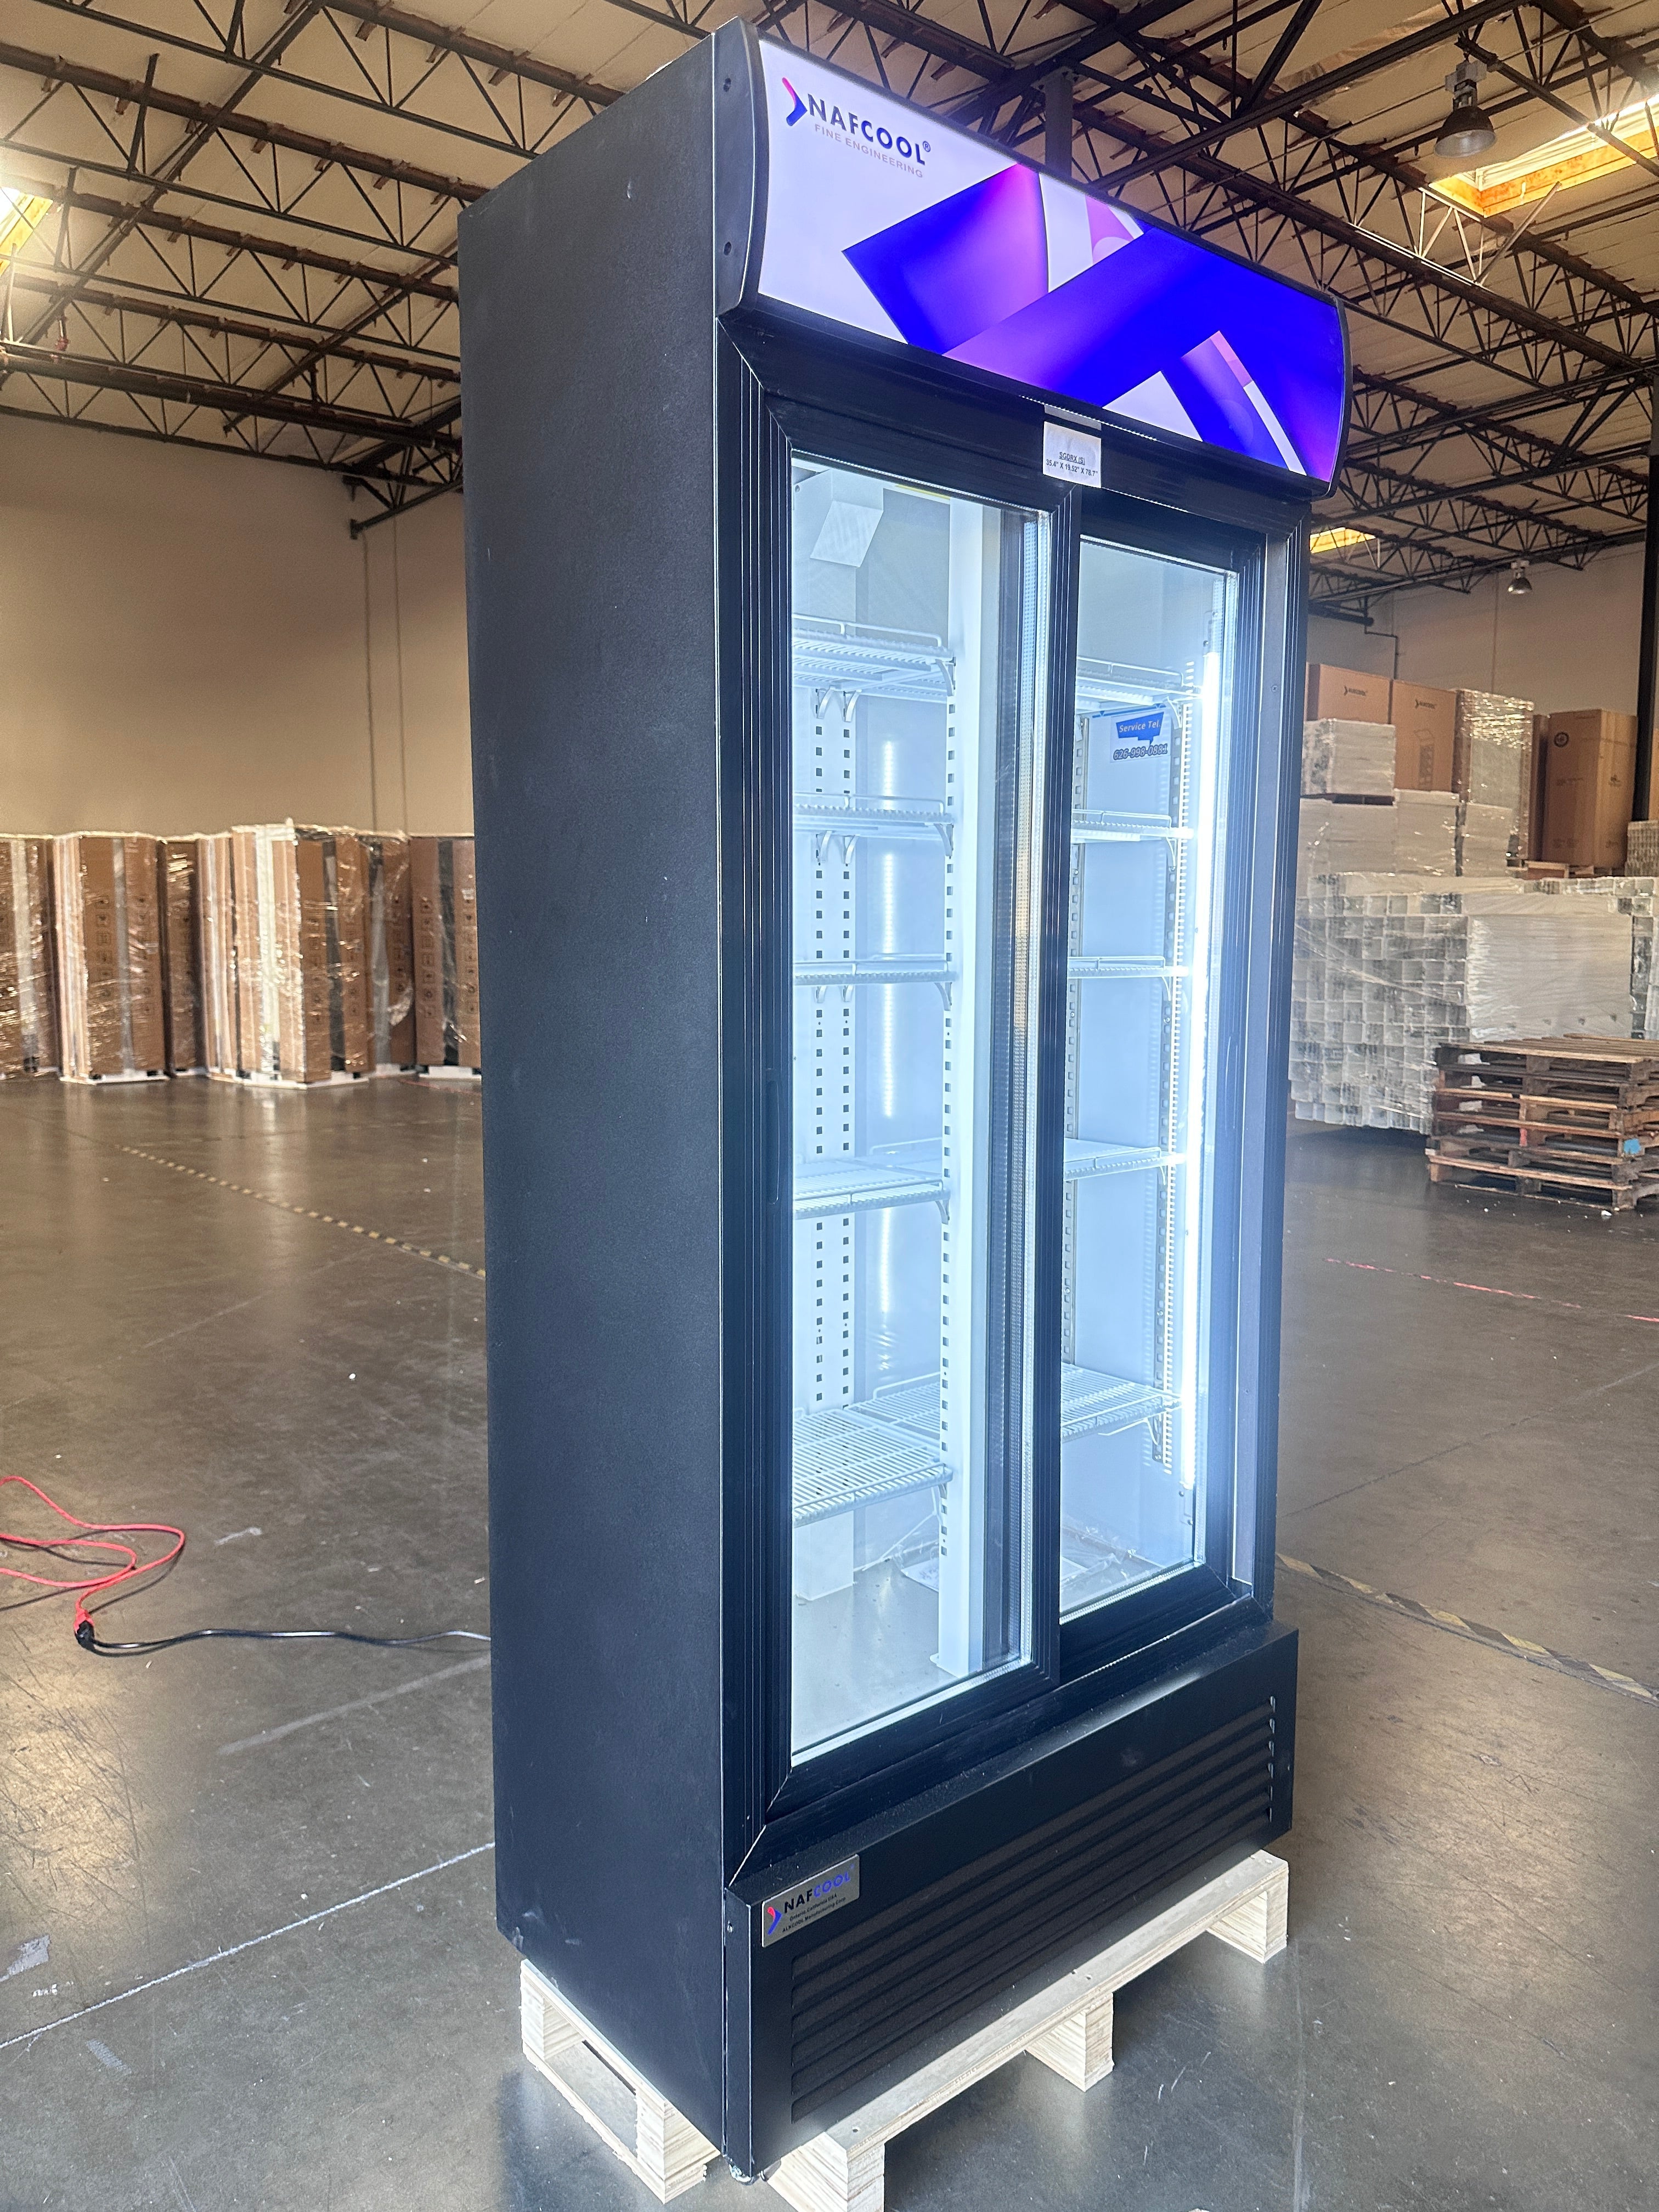 SDGRX(S) ETL, ETL Sanitation 36 inch Two section sliding glass door merchandiser refrigerator